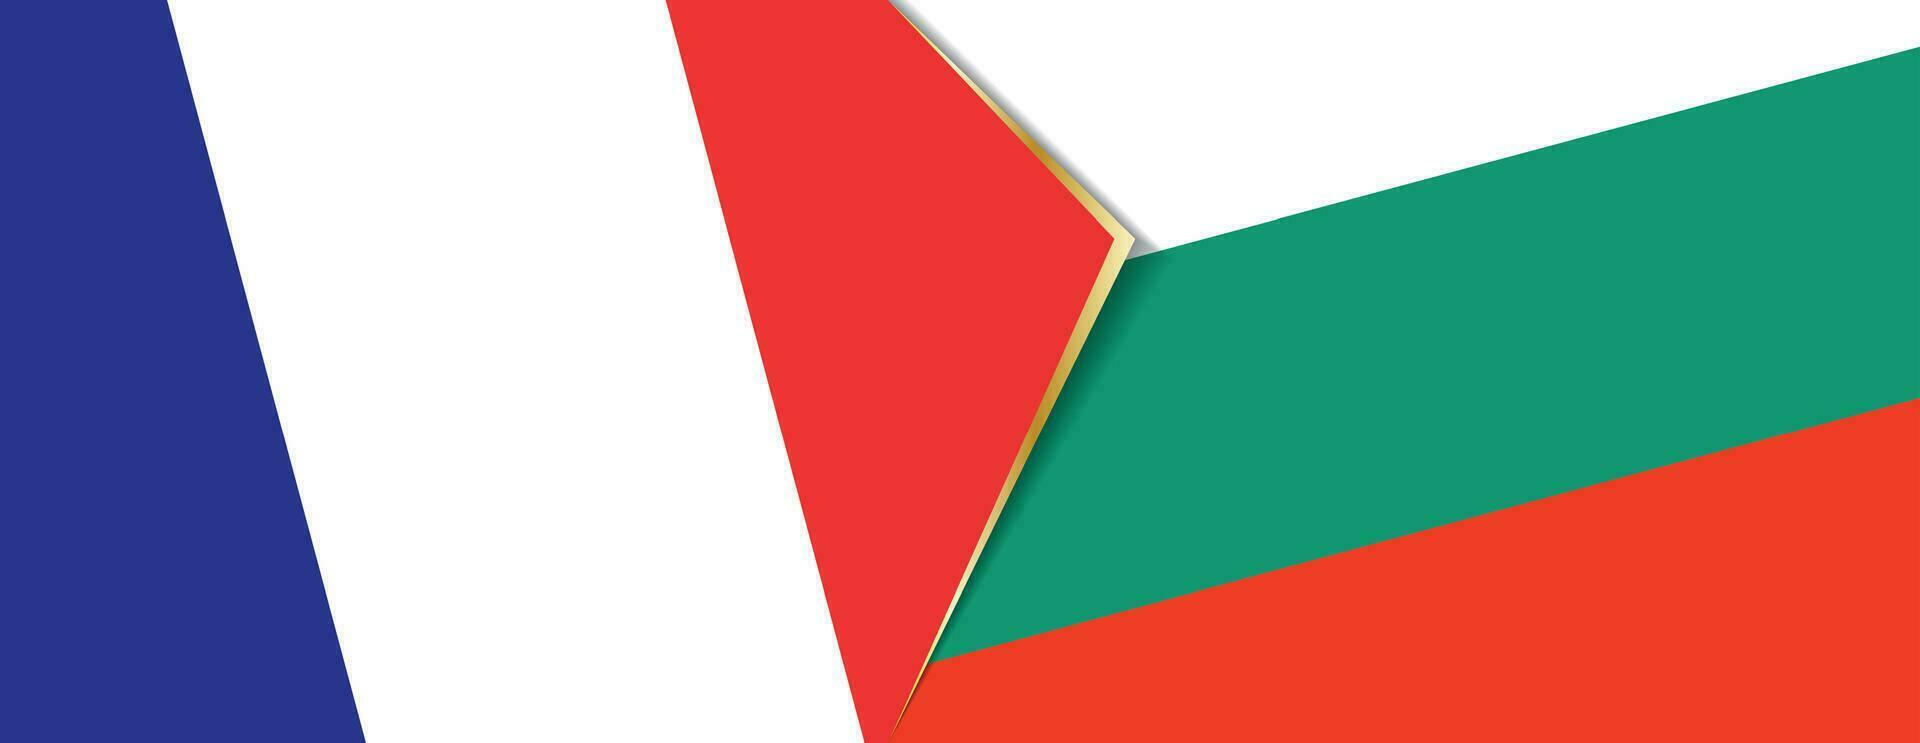 Francia y Bulgaria banderas, dos vector banderas